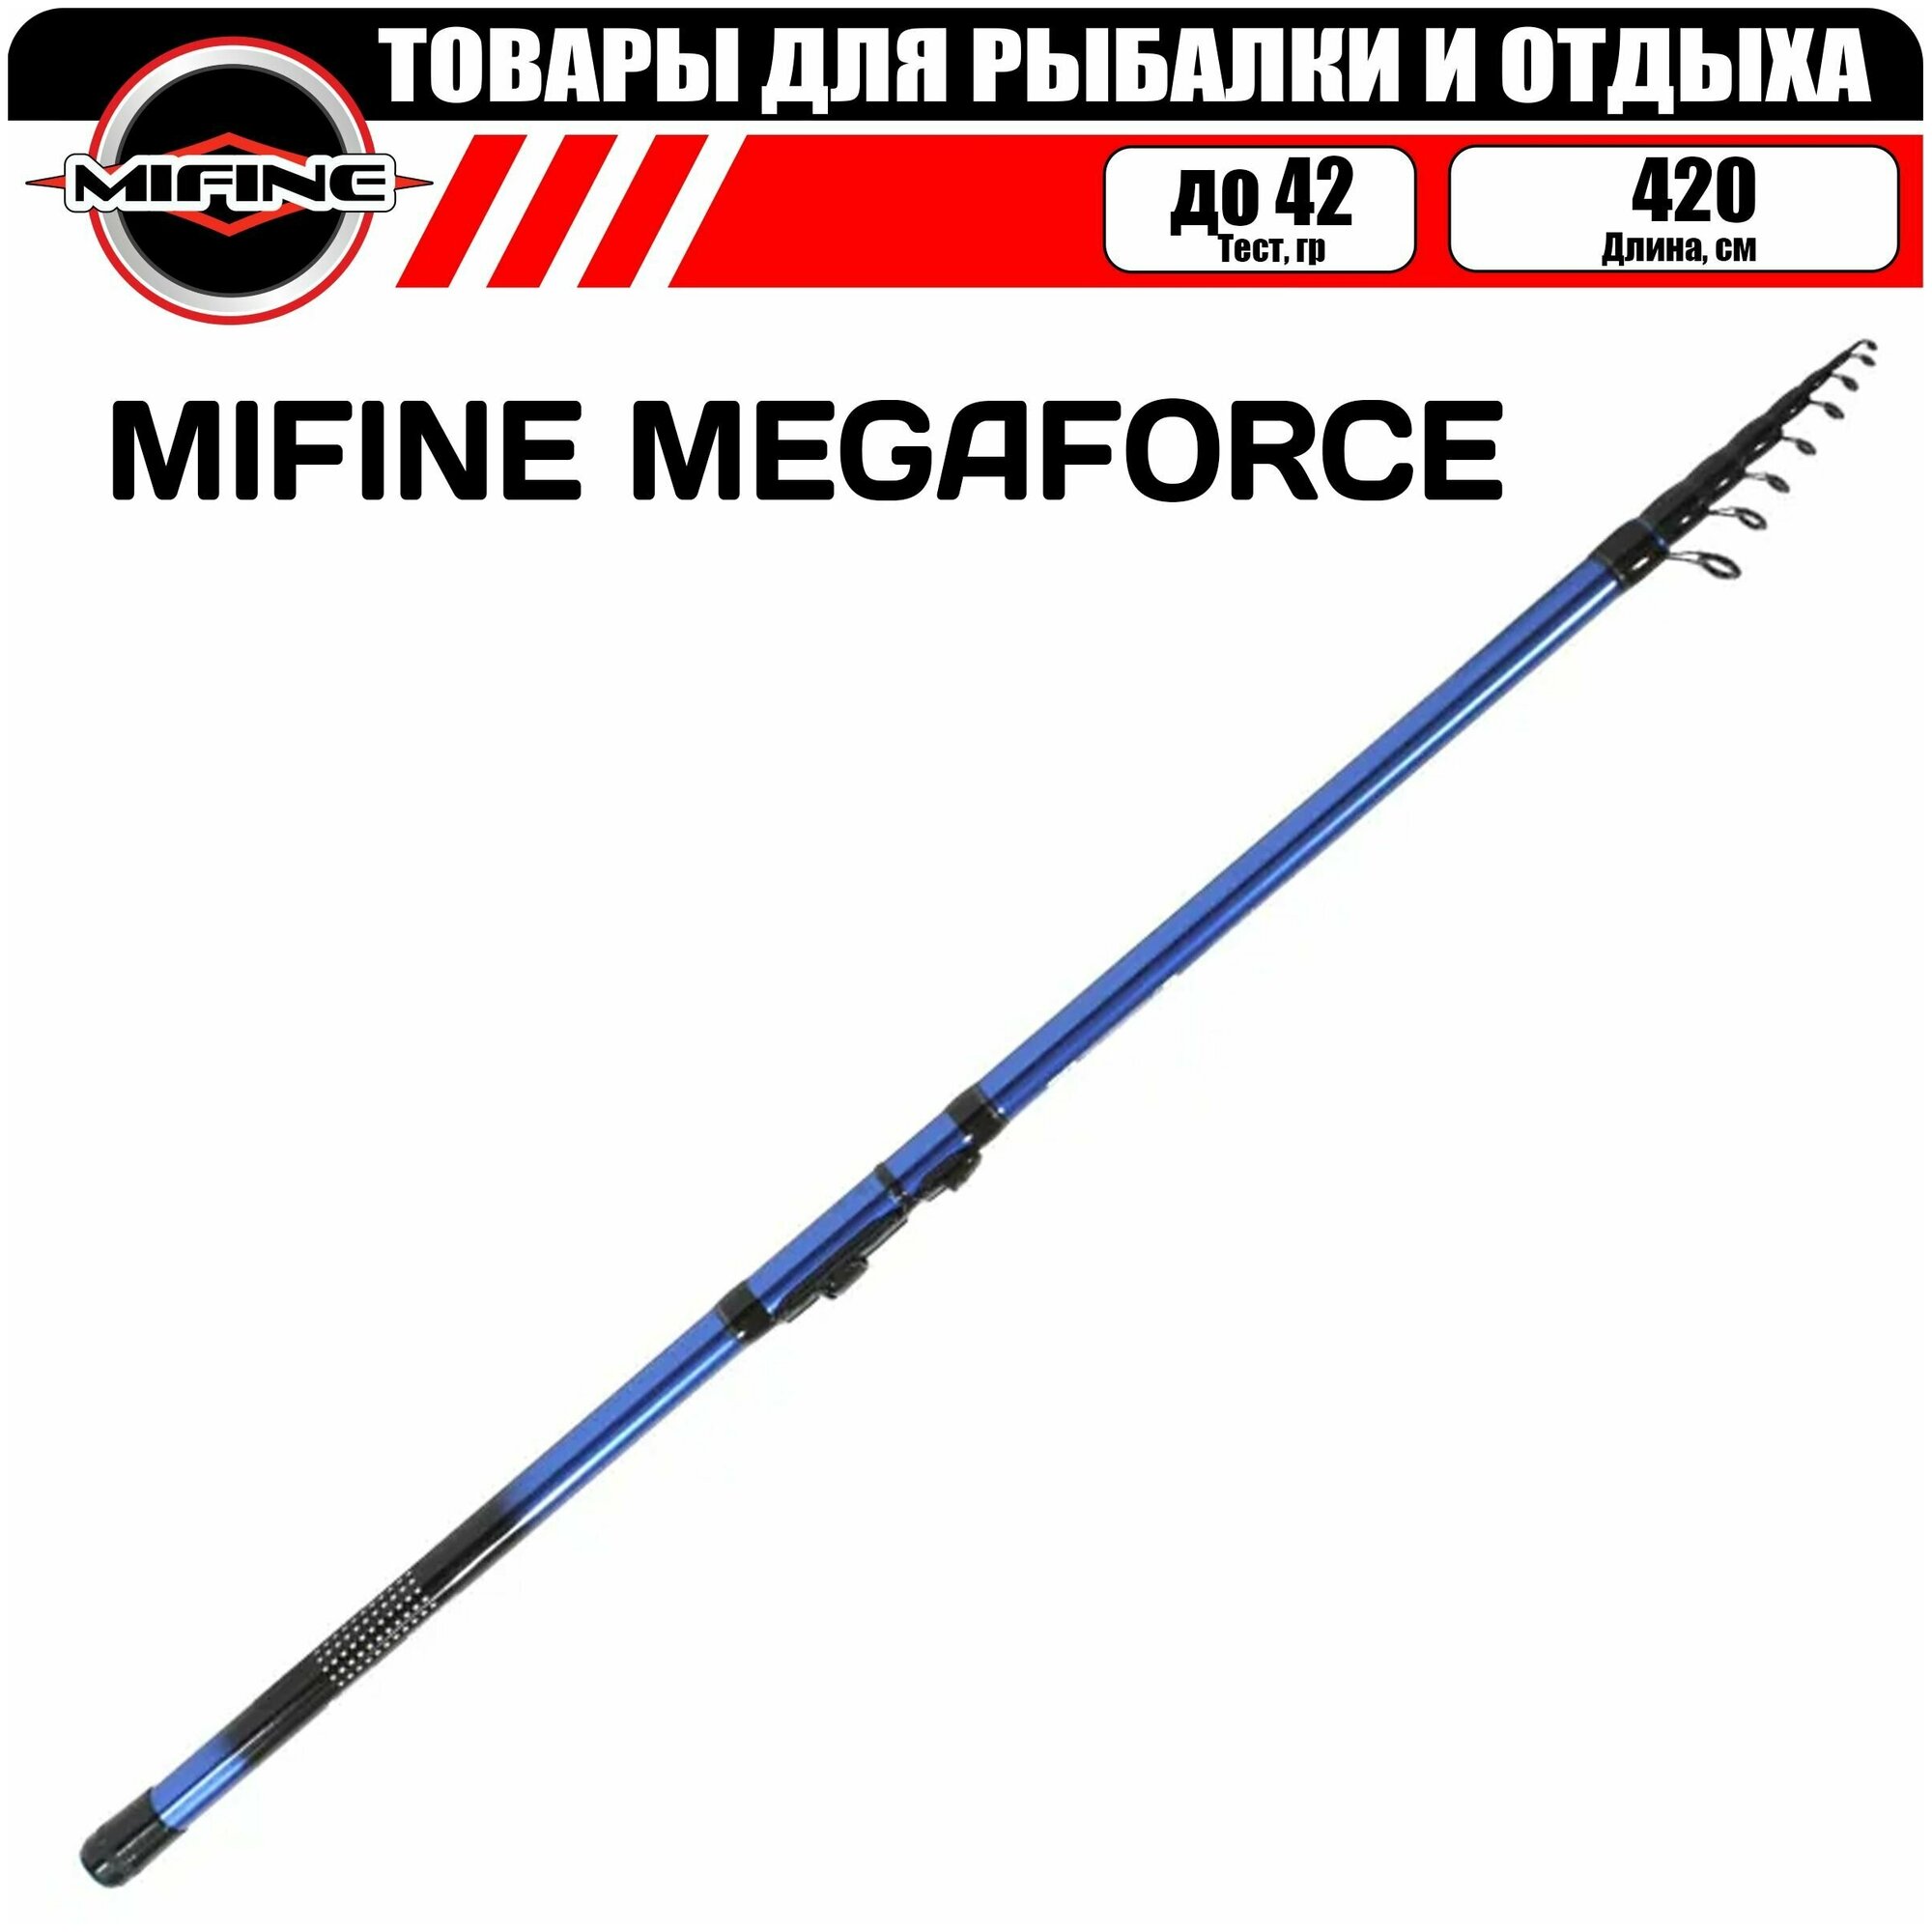 Удилище MIFINE MEGAFORCE С, К 4.2м (42гр), телескопическое, для рыбалки, рыболовное, болонское